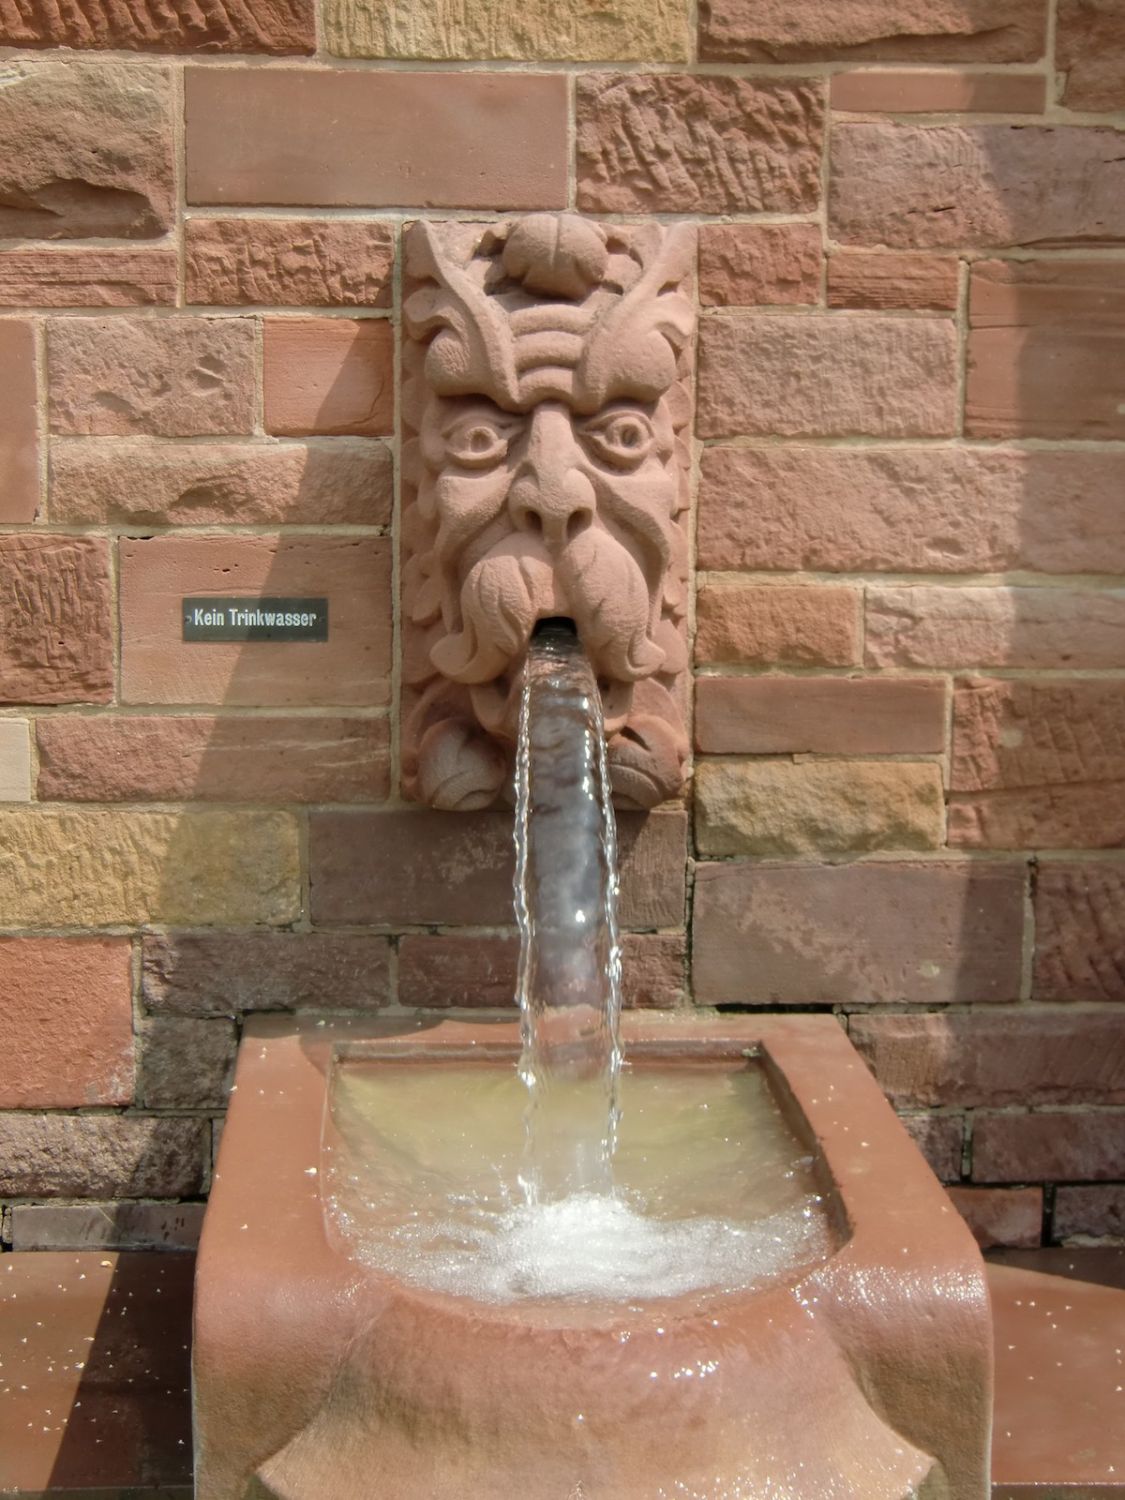 Brunnen im Schlossgarten